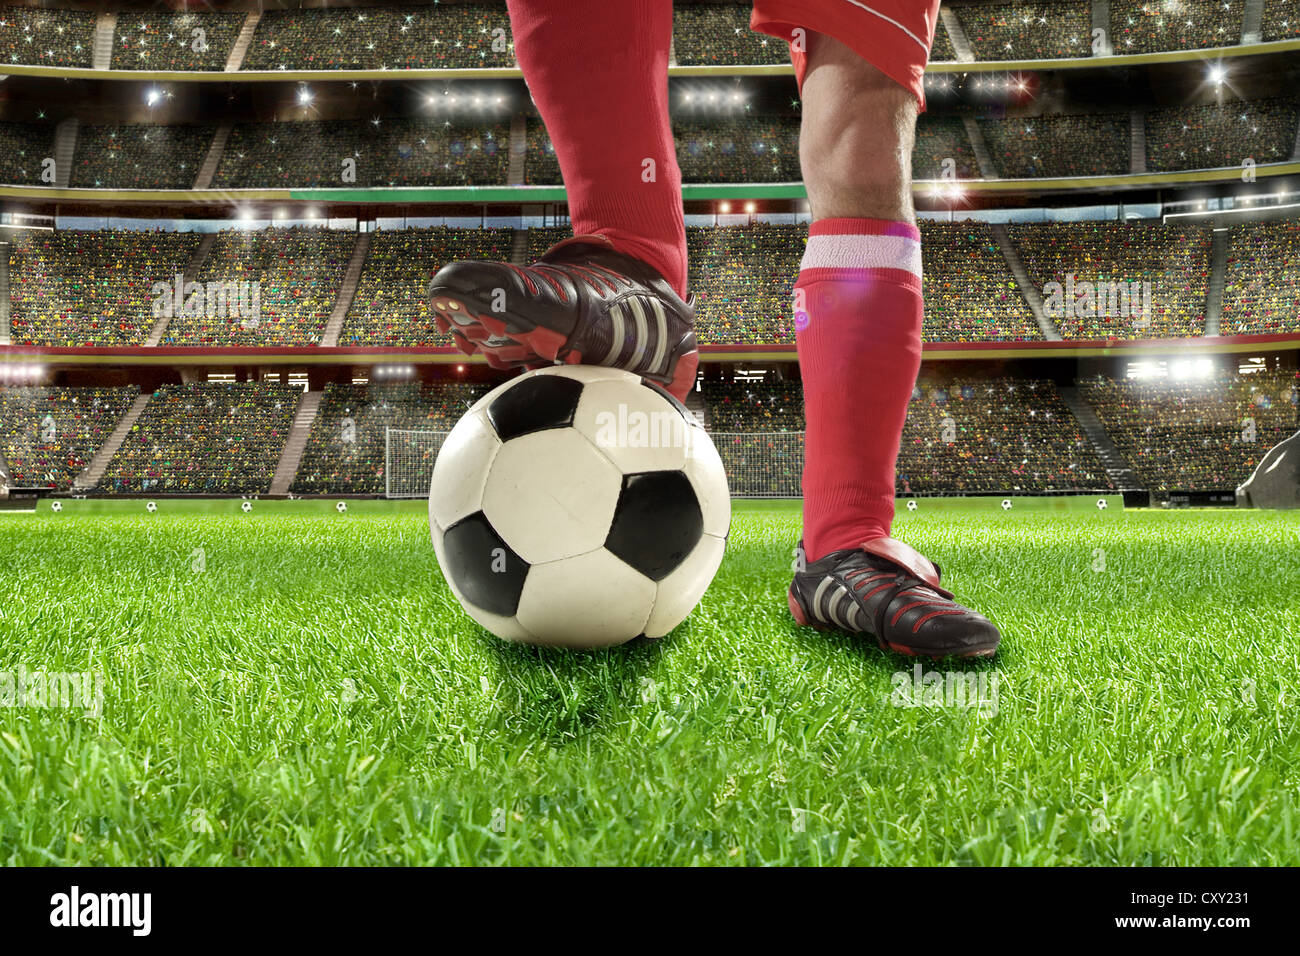 Soccer player, legs, soccer ball, soccer stadium Stock Photo